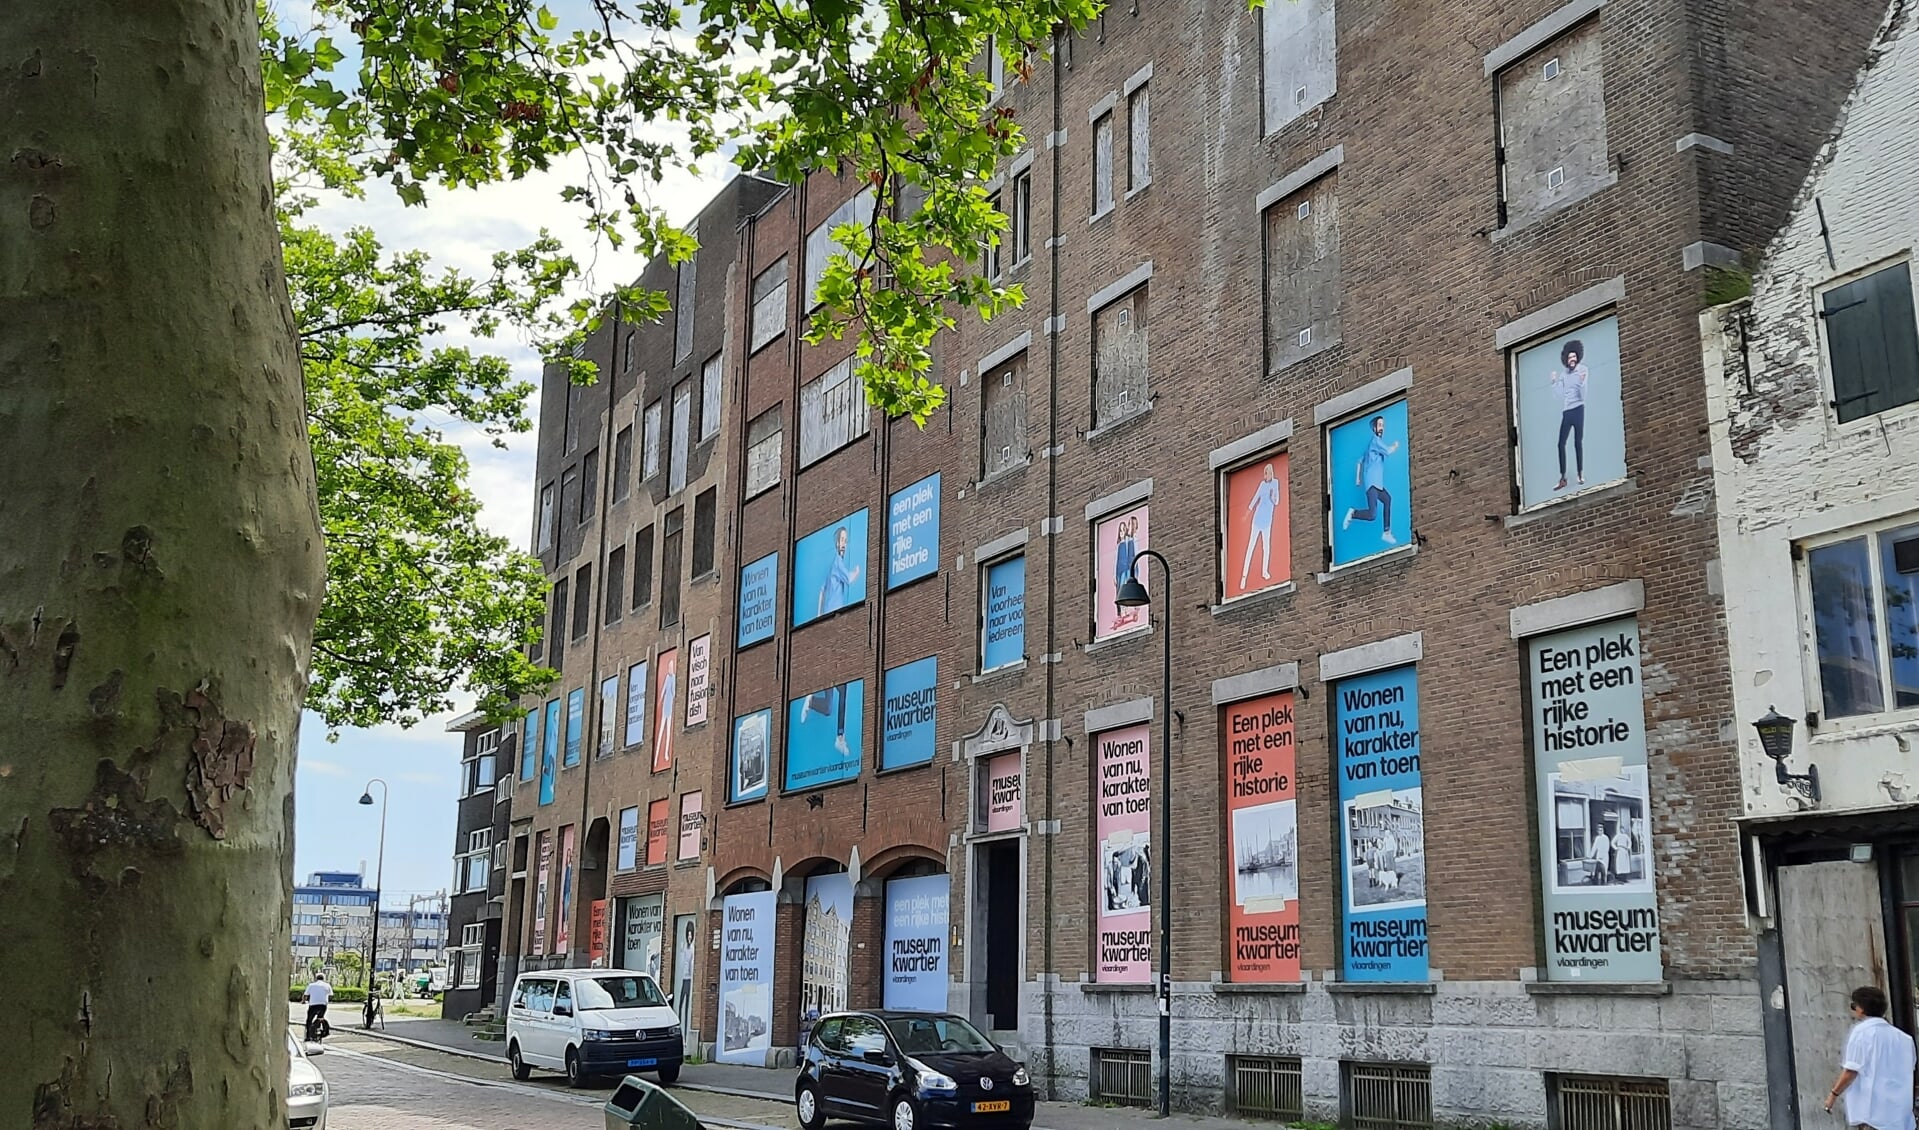 De sterk in verval geraakte Sprijpanden aan de Westhavenkade, een doorn in het oog van veel Vlaardingers, worden gerenoveerd gelijktijdig met de ontwikkeling van het Museumkwartier.